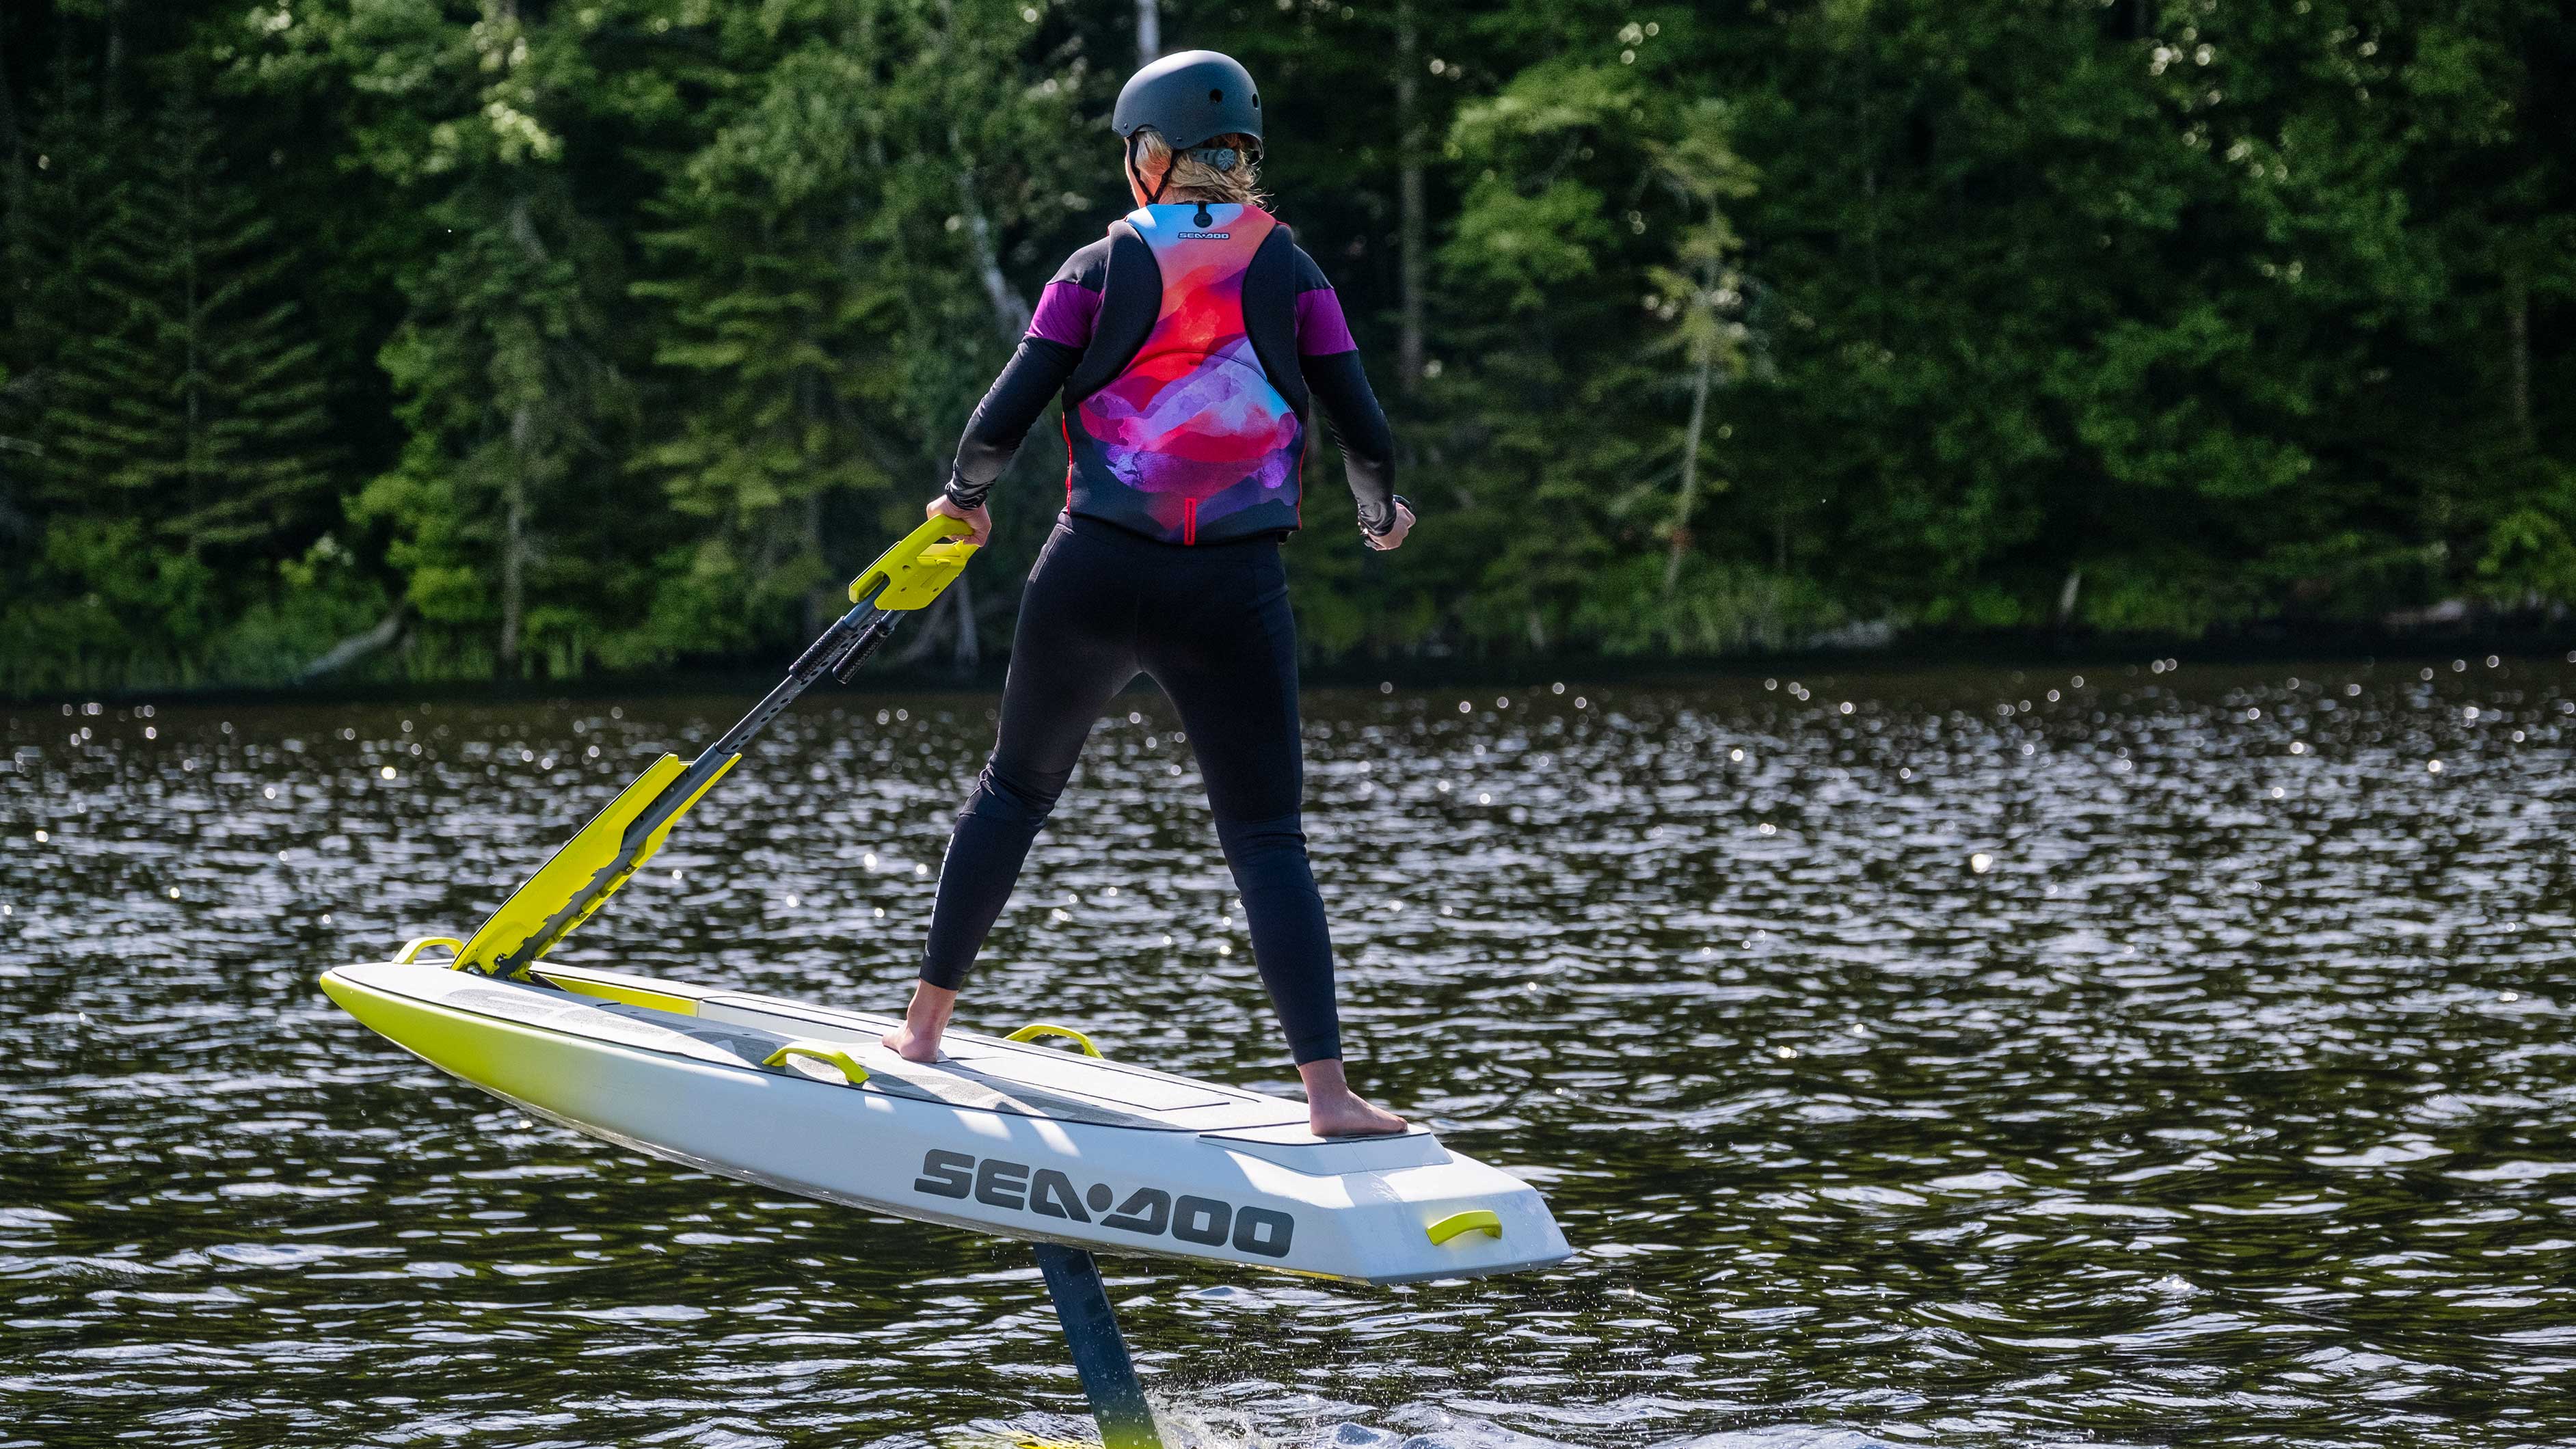 Femme surfant avec le Sea-Doo Rise, nouvelle planche de surf électrique à foil volante